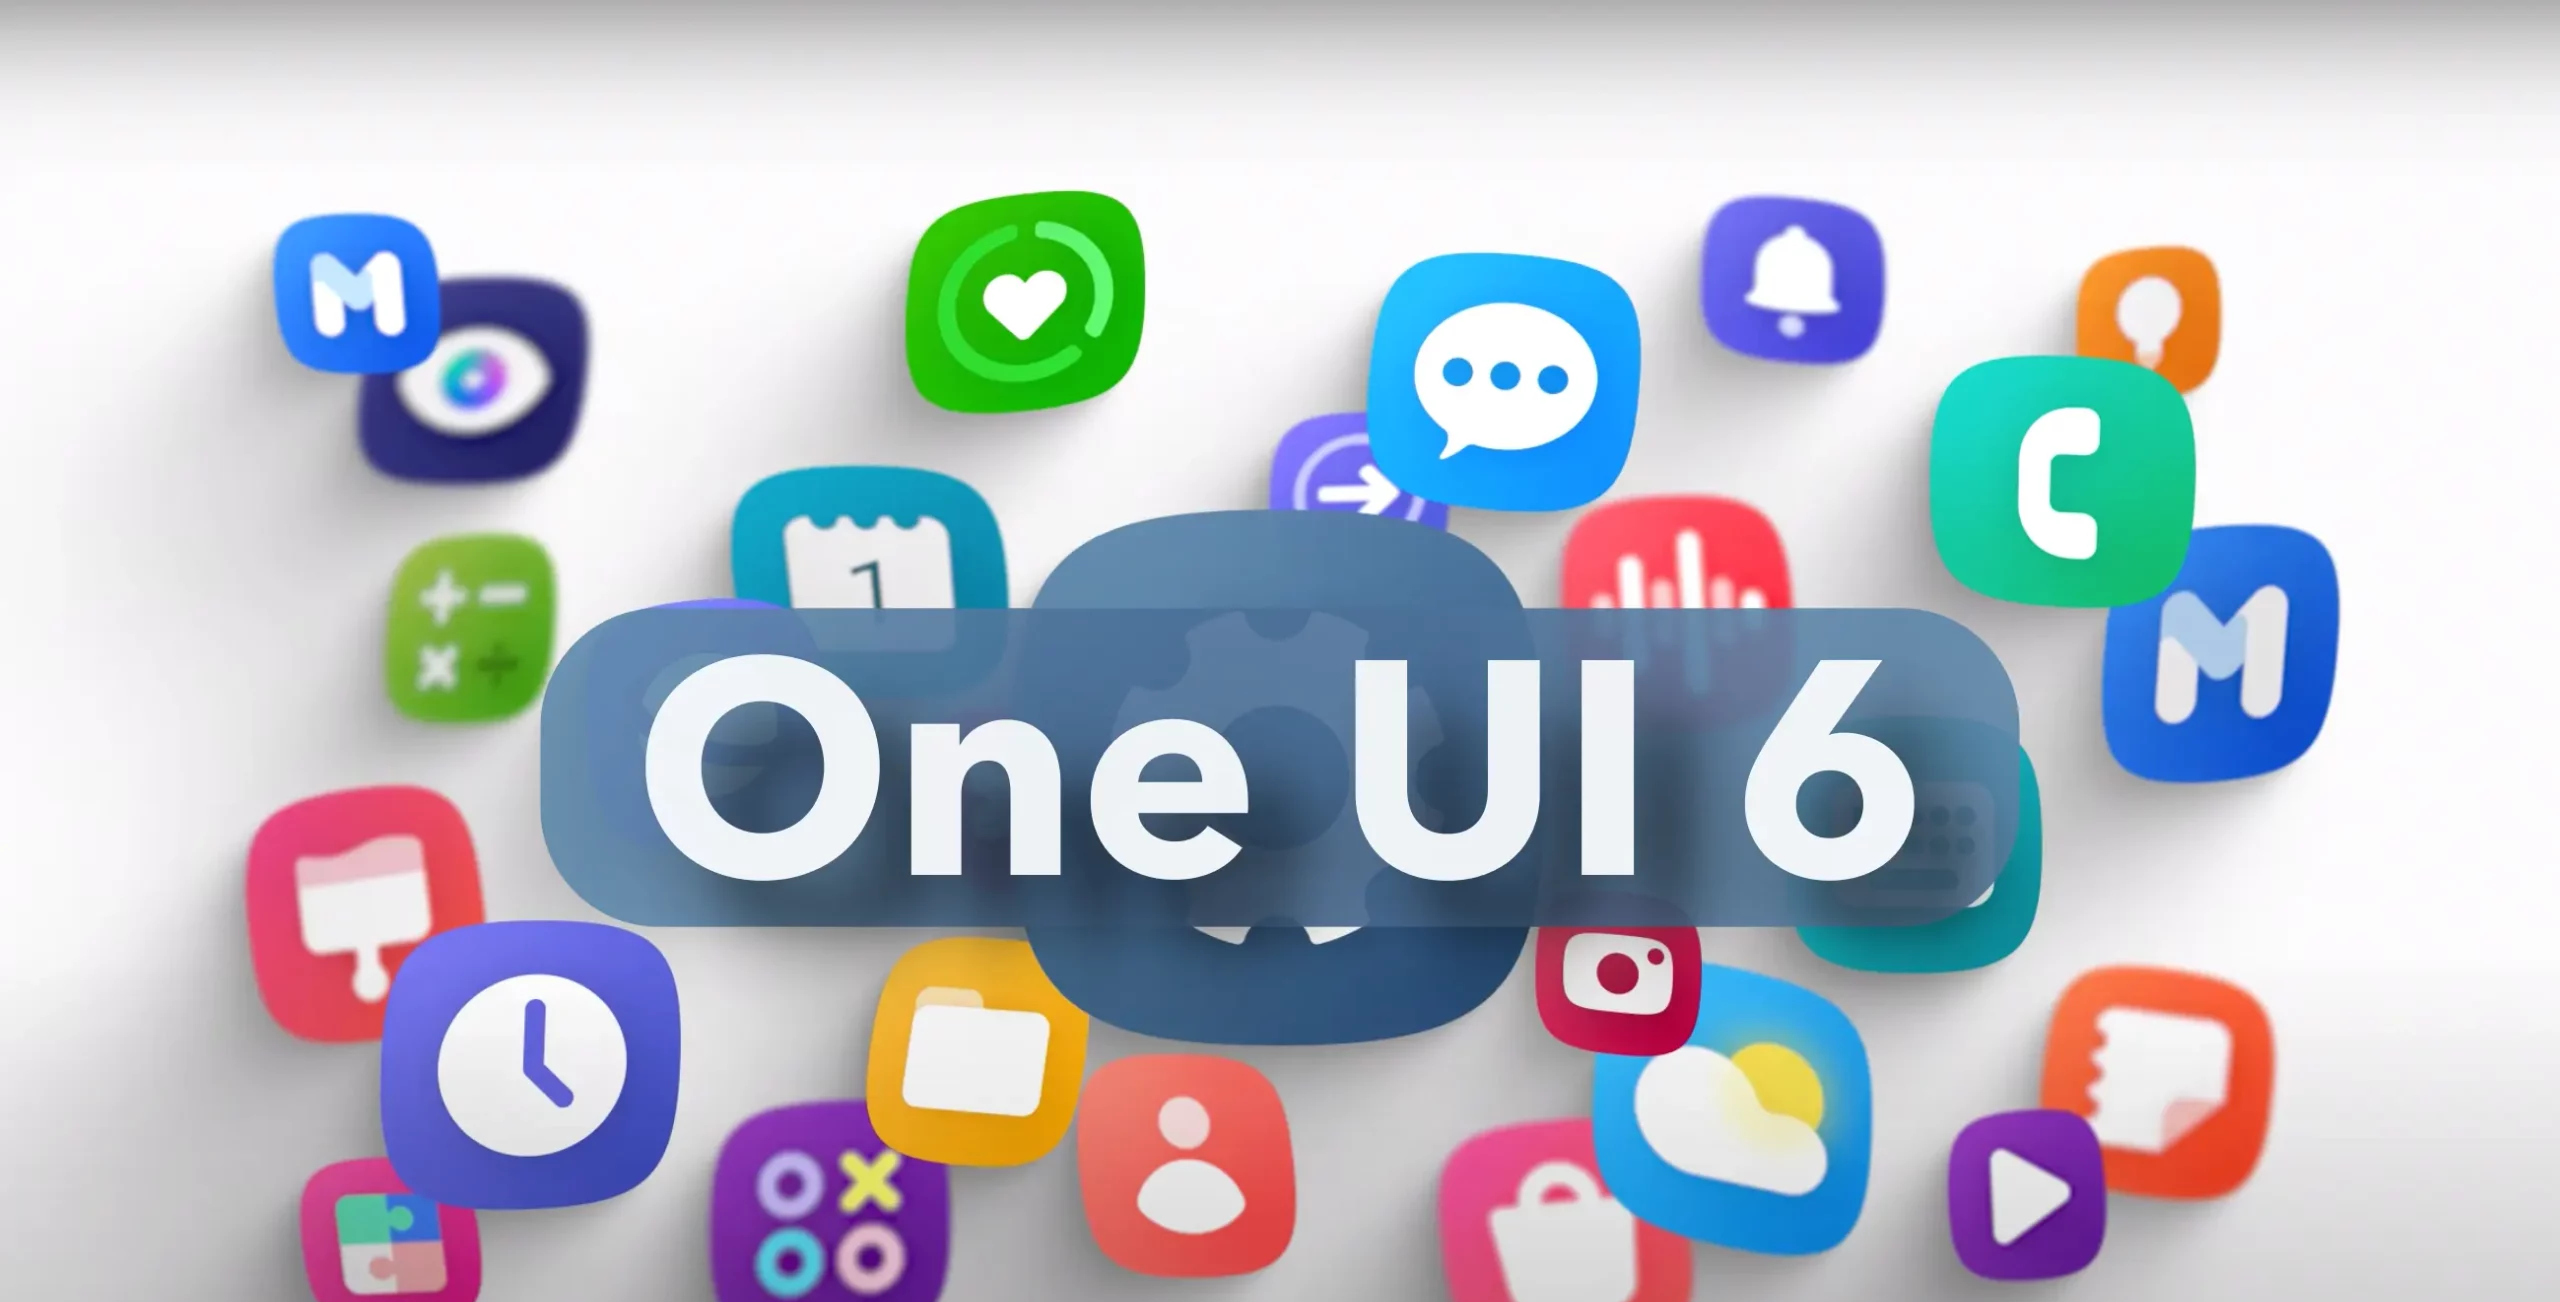 رام سفارشی One UI 6.0 بر اساس اندروید 14 برای Galaxy Note 9